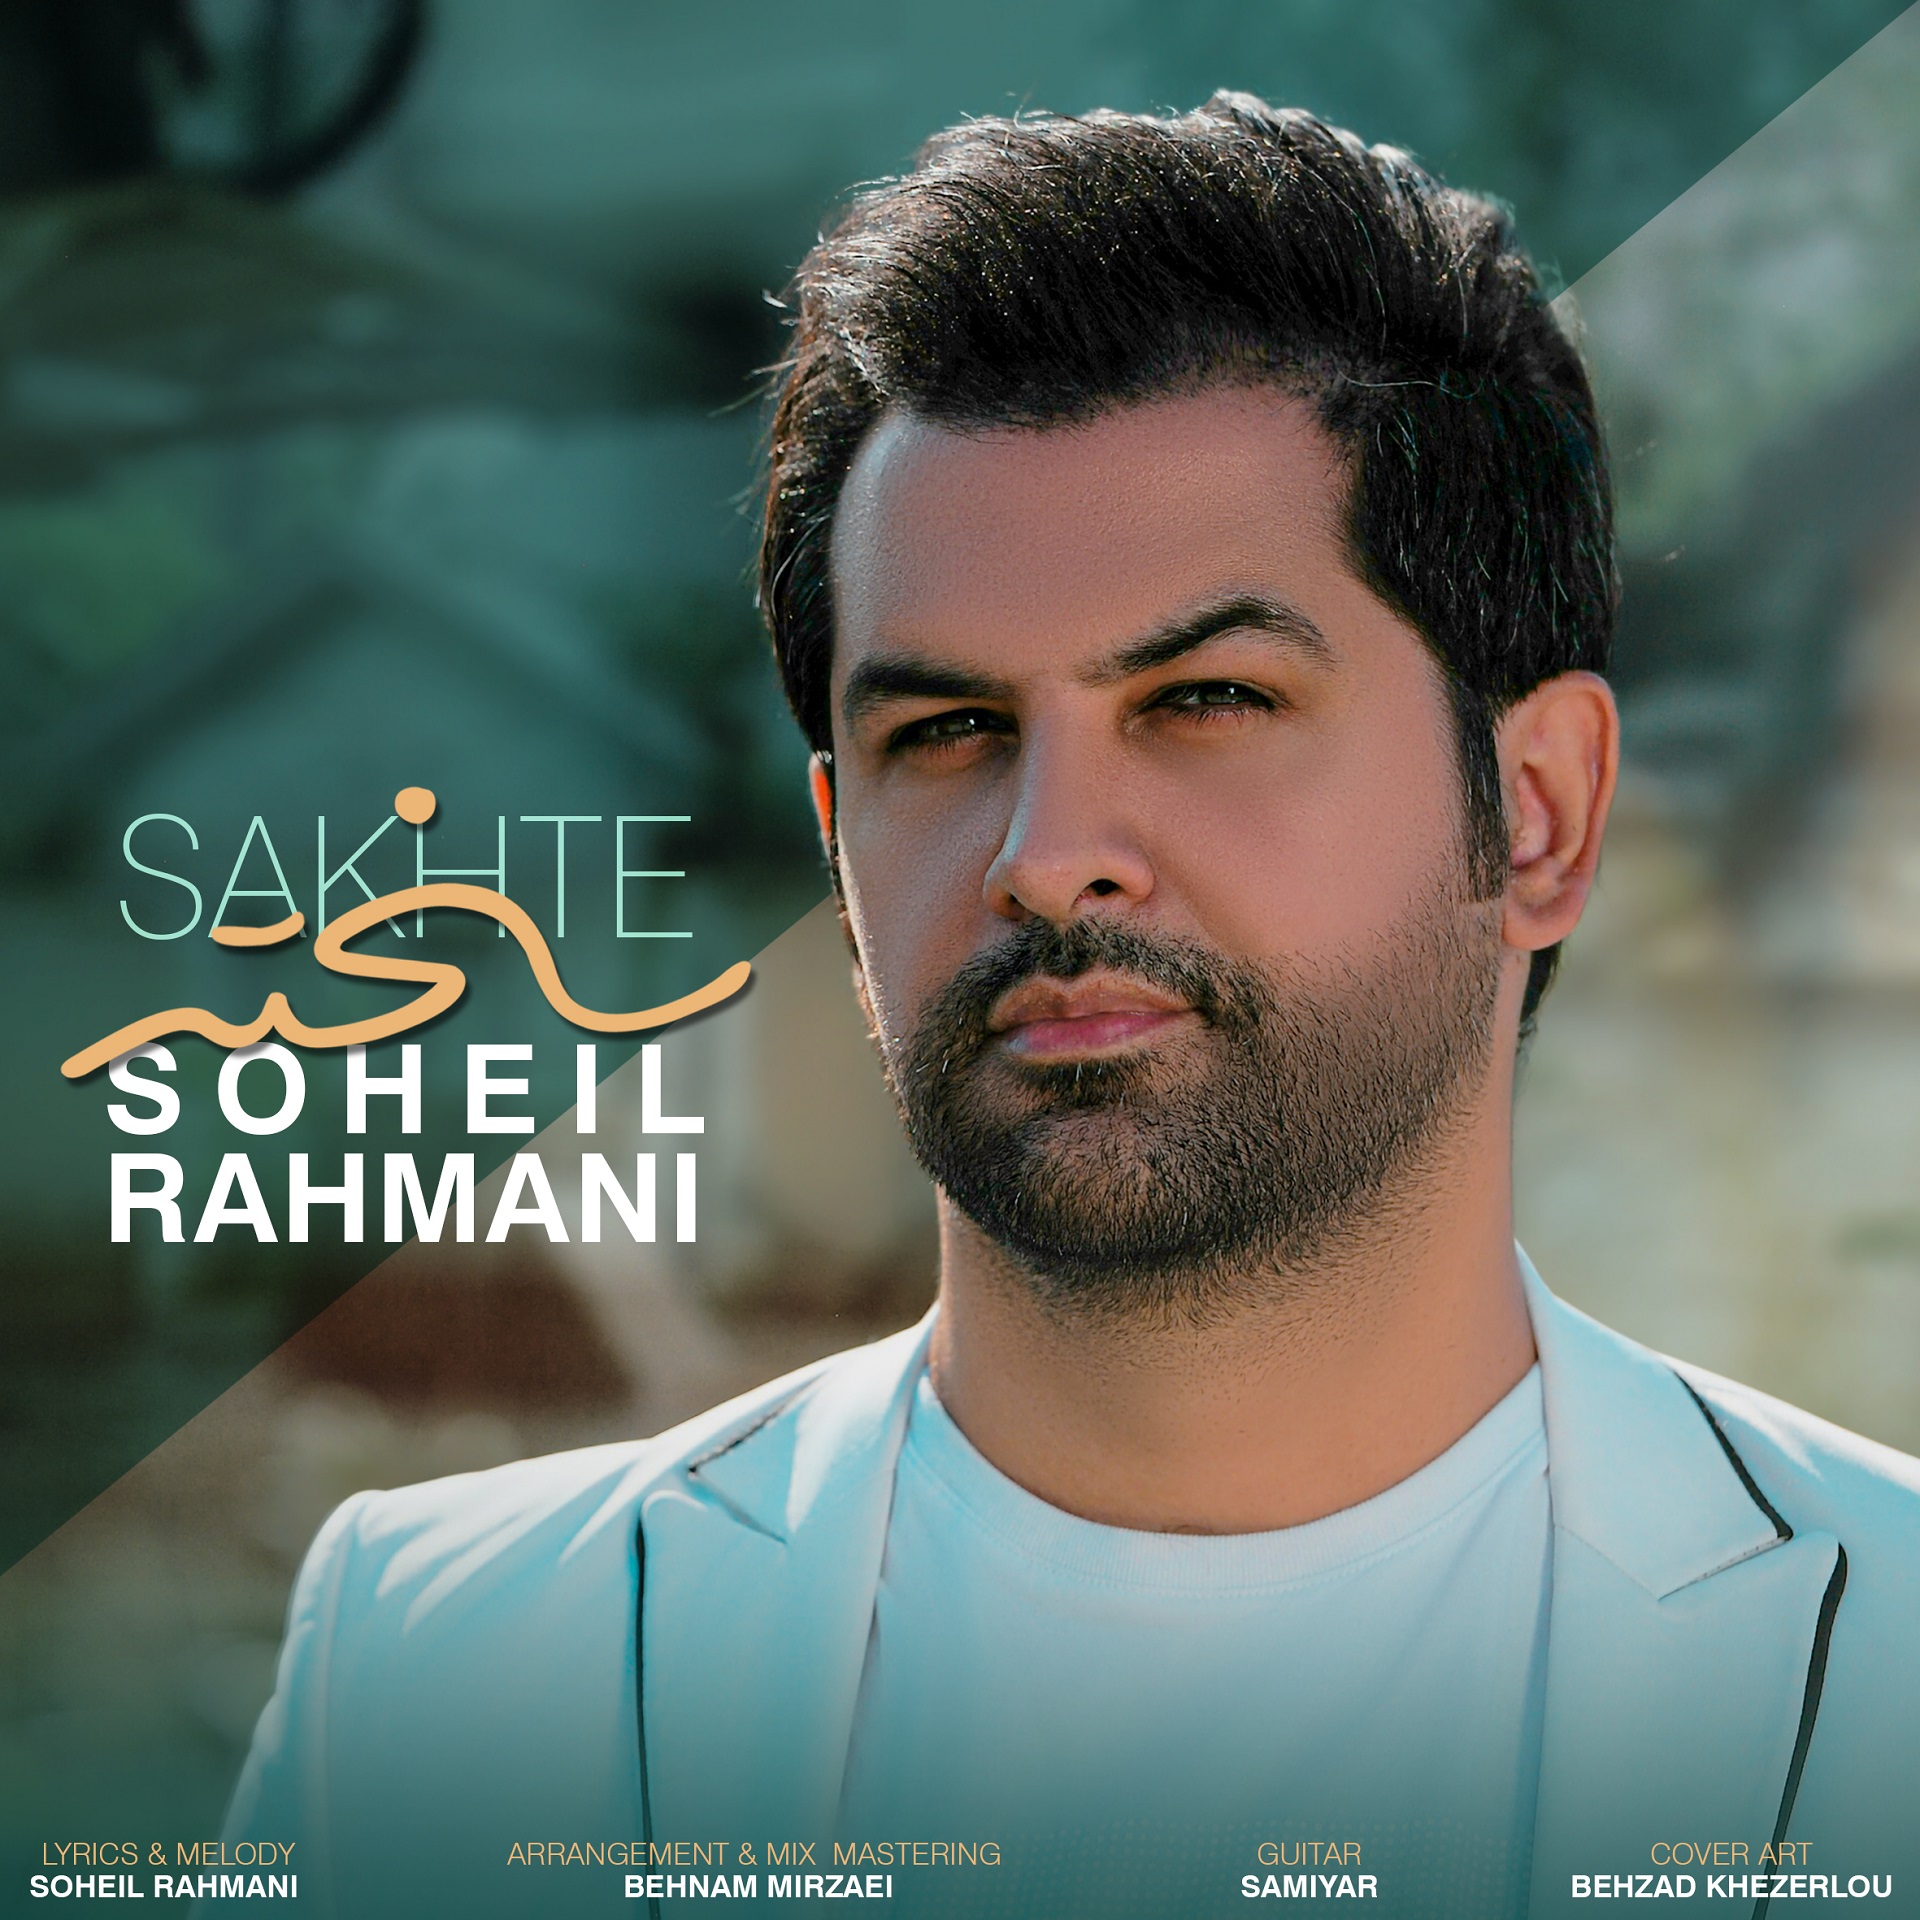  دانلود آهنگ جدید سهیل رحمانی - سخته | Download New Music By Soheil Rahmani - Sakhte